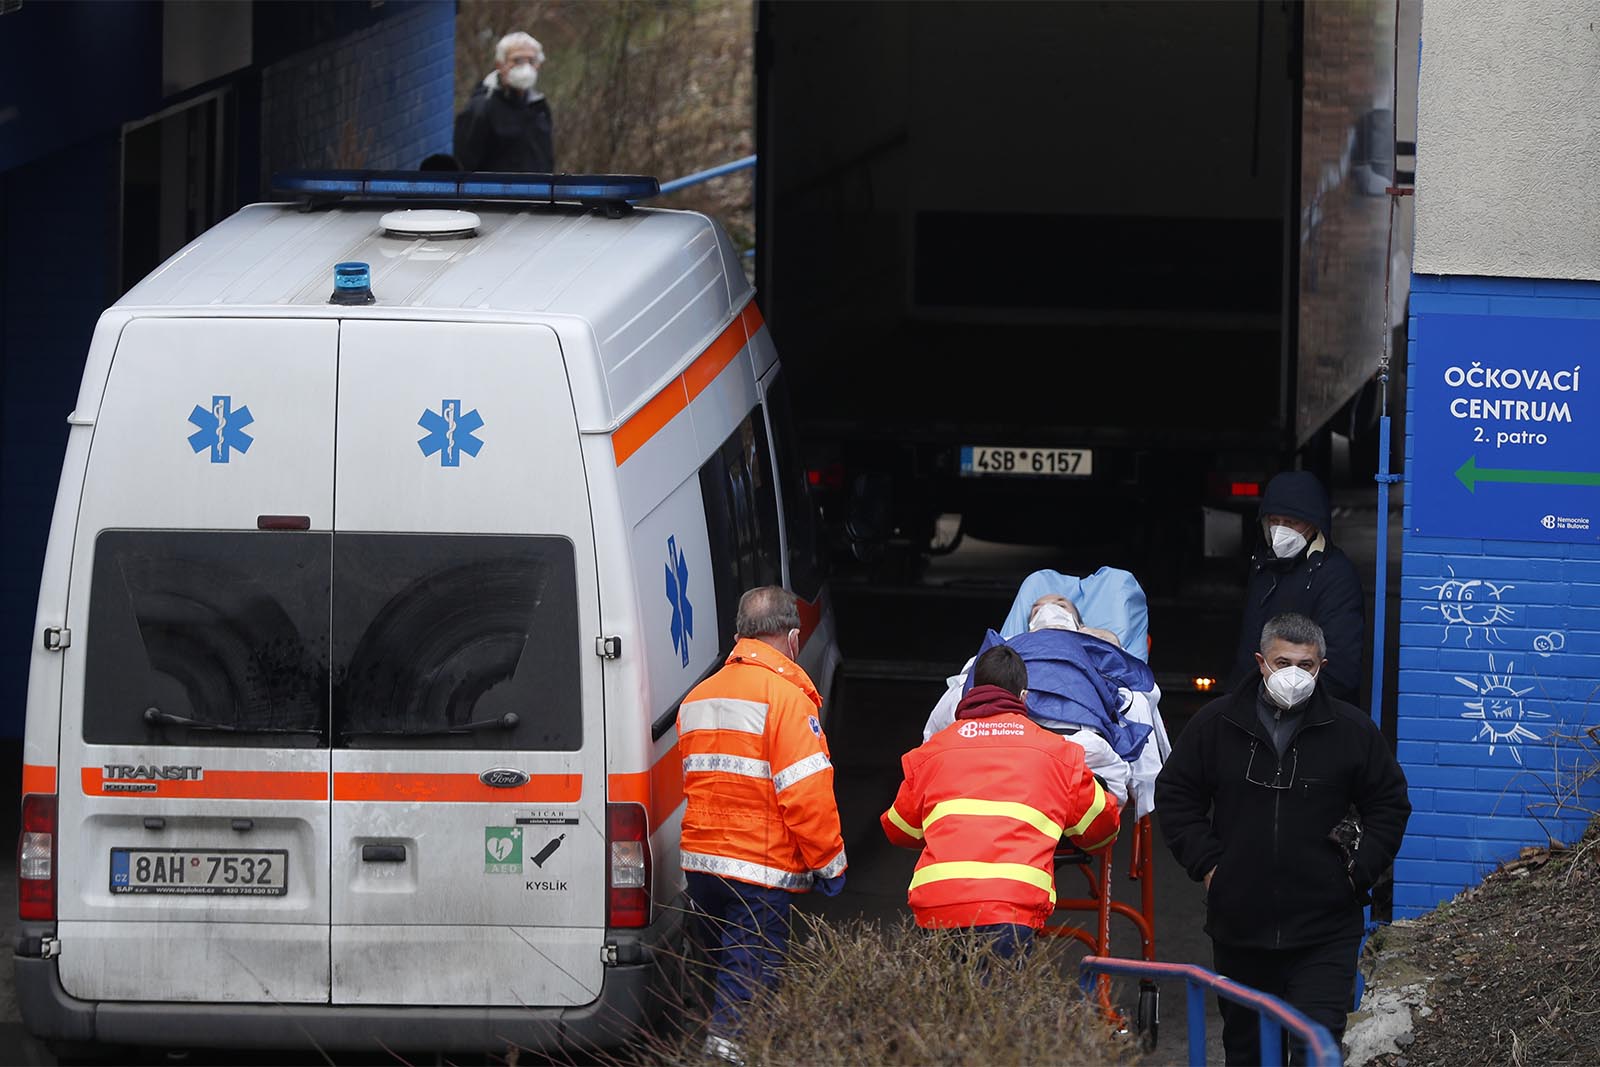 אמבולנס עם חולה קורונה בכניסה לבית חולים בולובקה בפראג, צ'כיה (צילום: AP Photo/Petr David Josek)